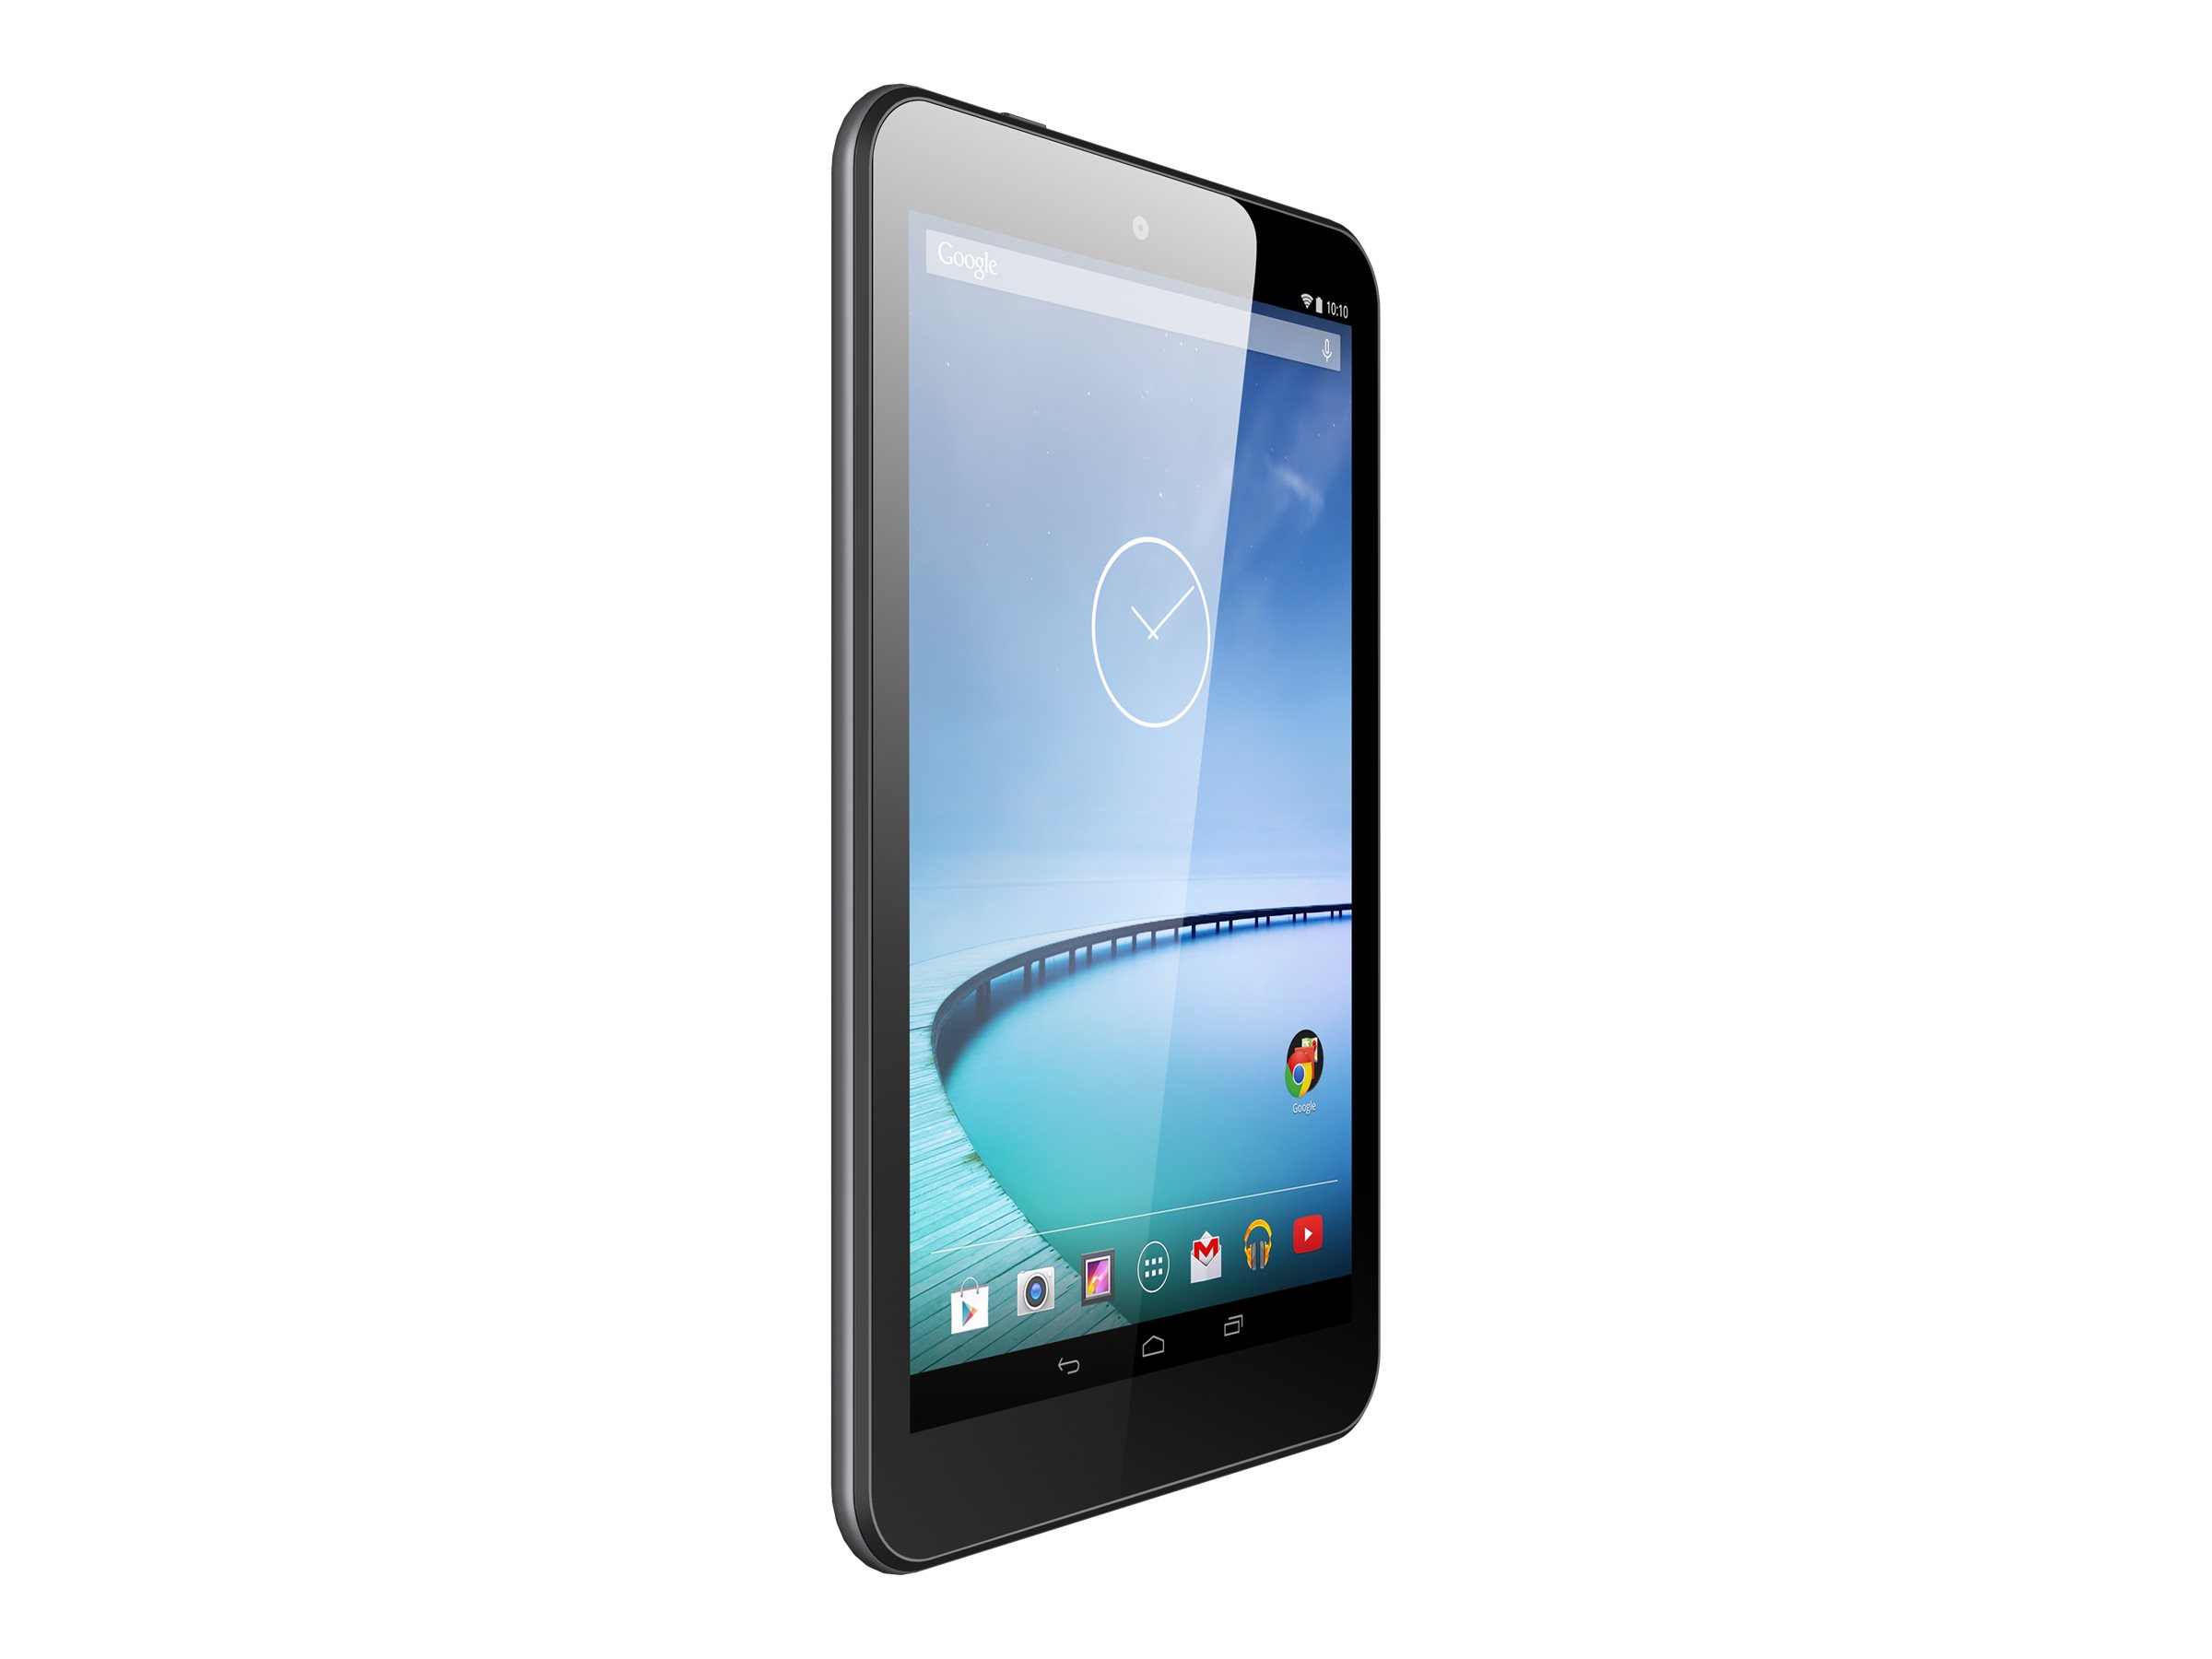 Hisense Sero 8 - Tablet - Android 4.4 (KitKat) - 16 GB - 8" (1280 x 800) - USB host - microSD slot - image 3 of 6